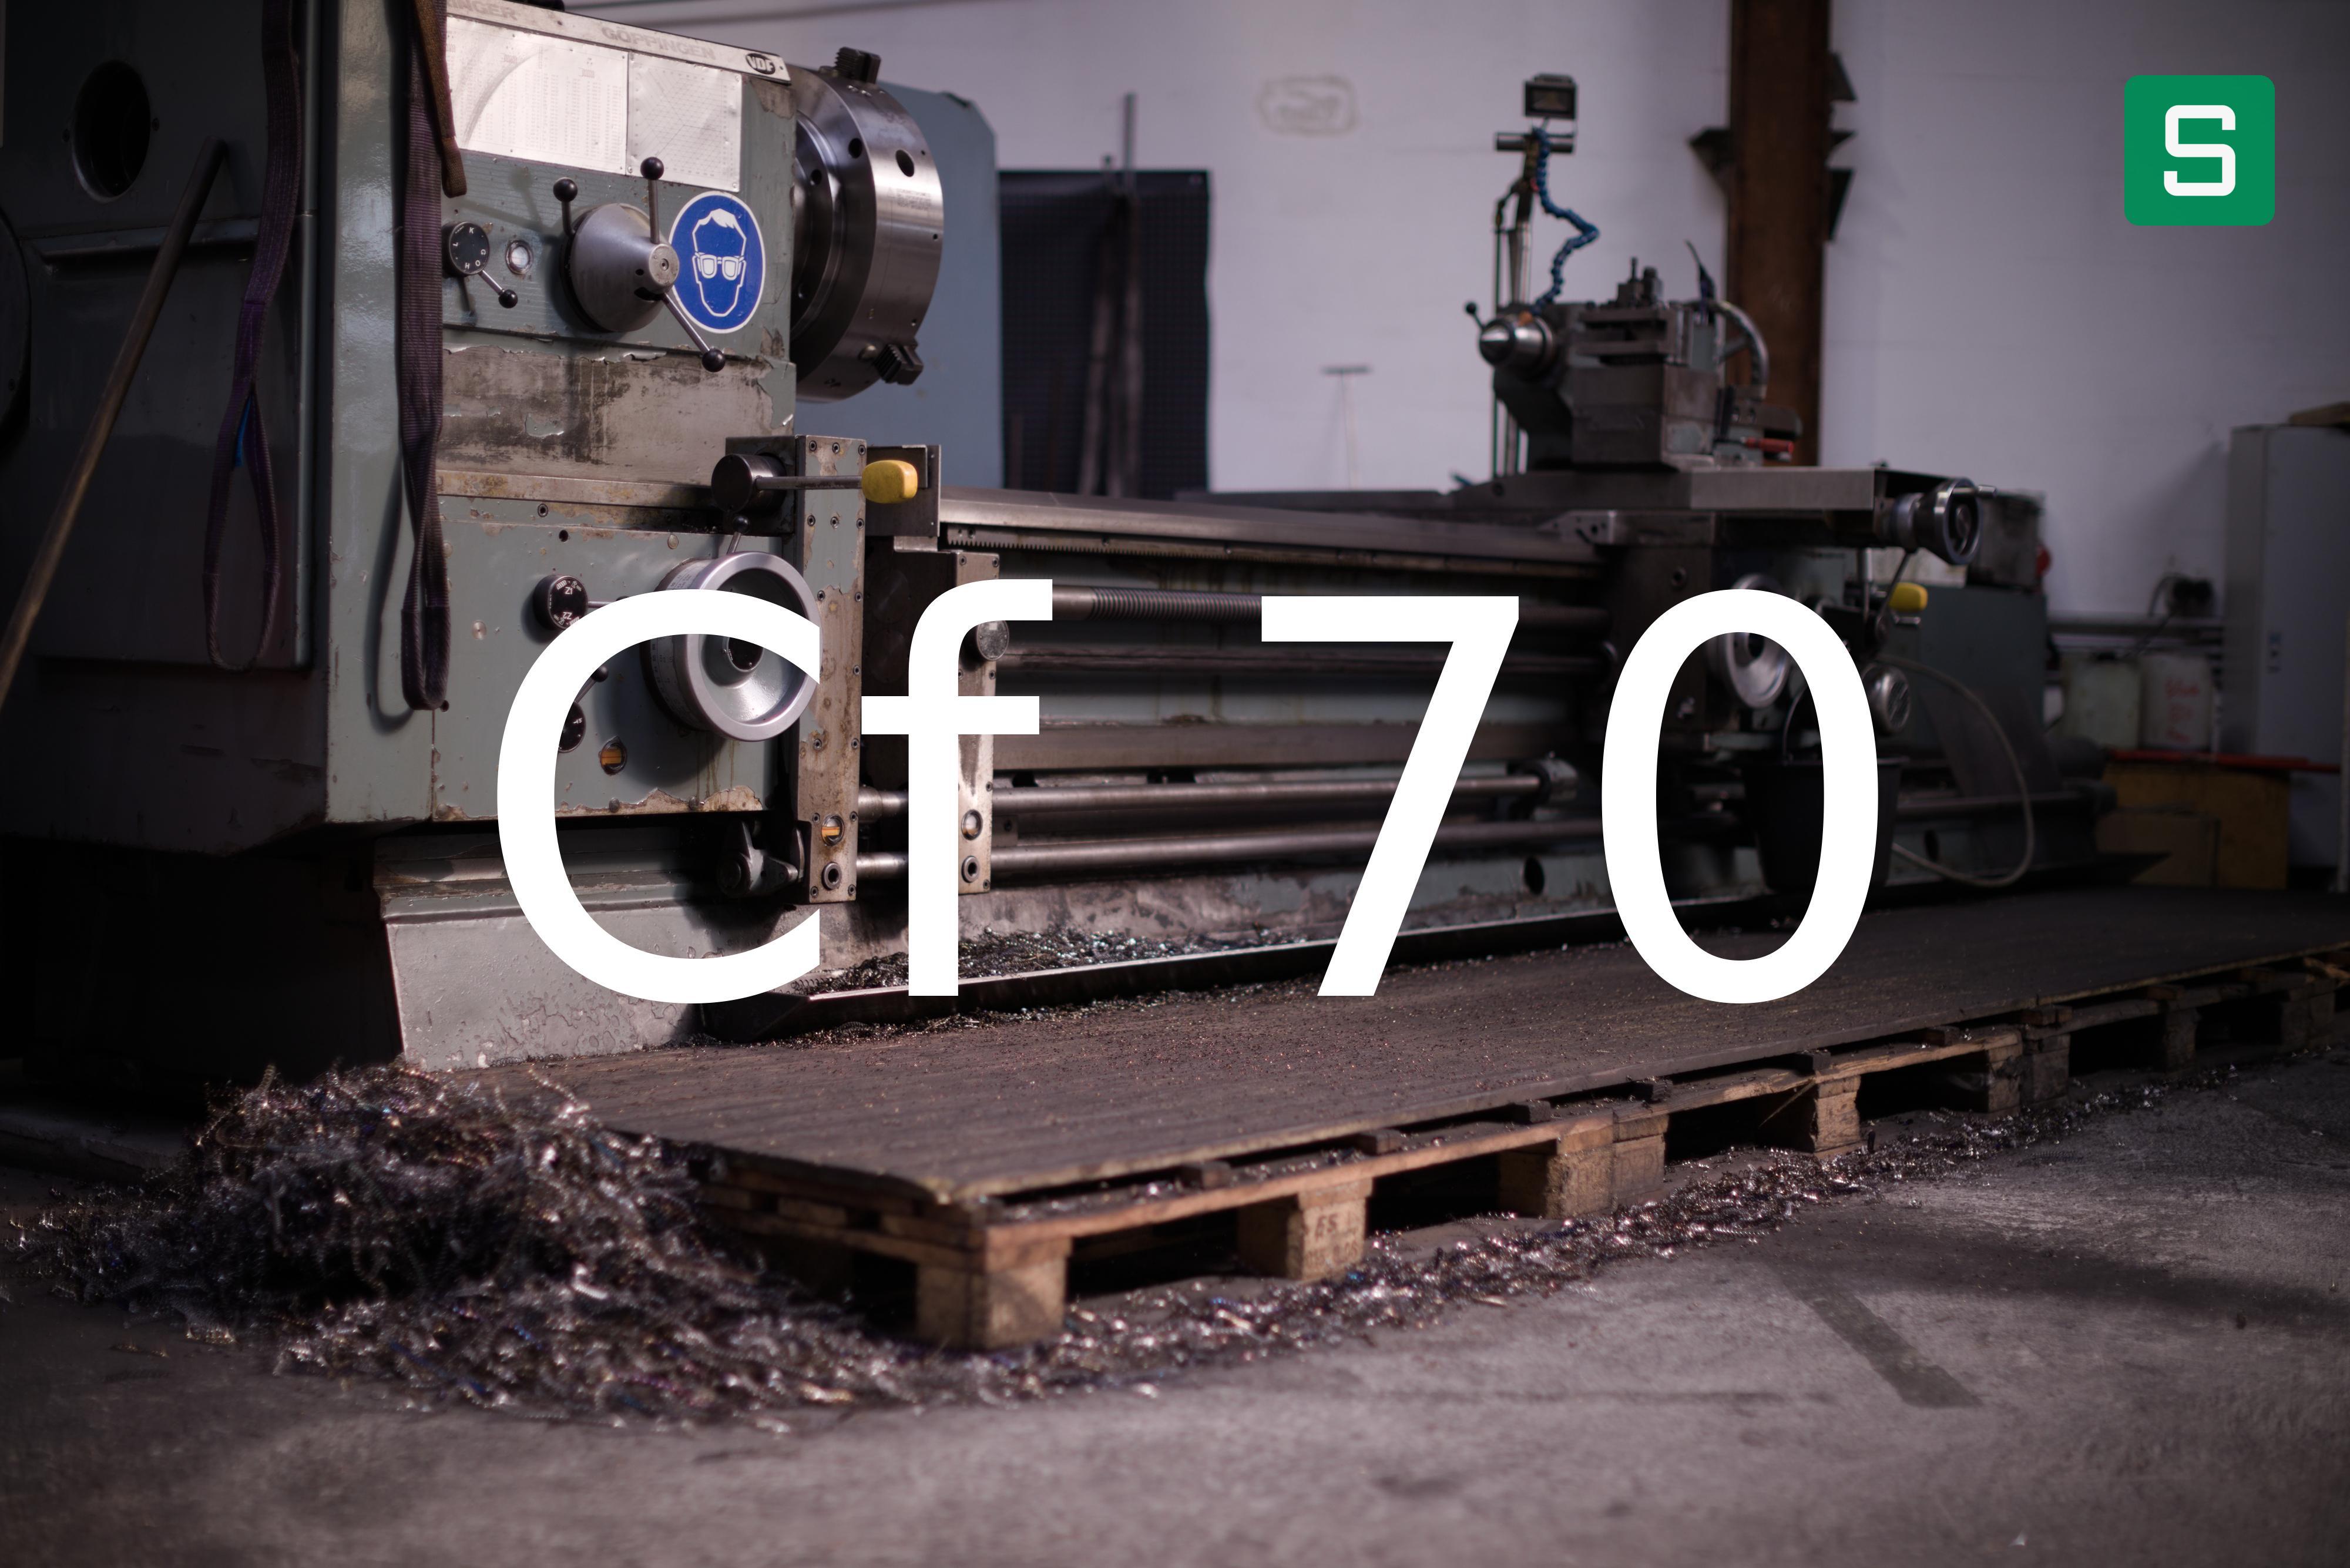 Steel Material: Cf 70